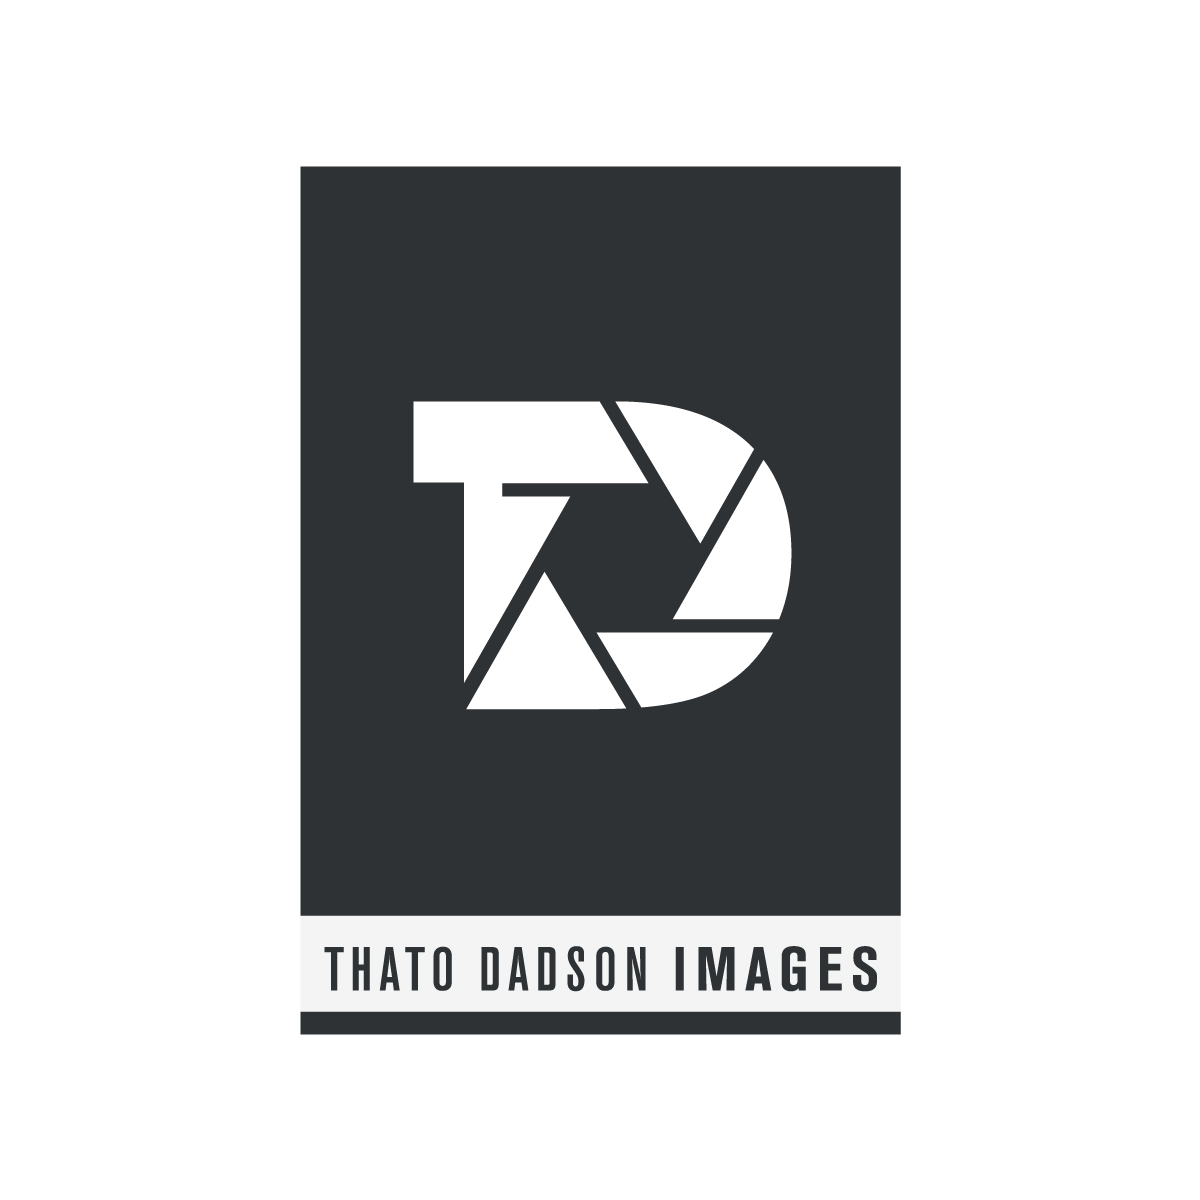 thato dadson logo